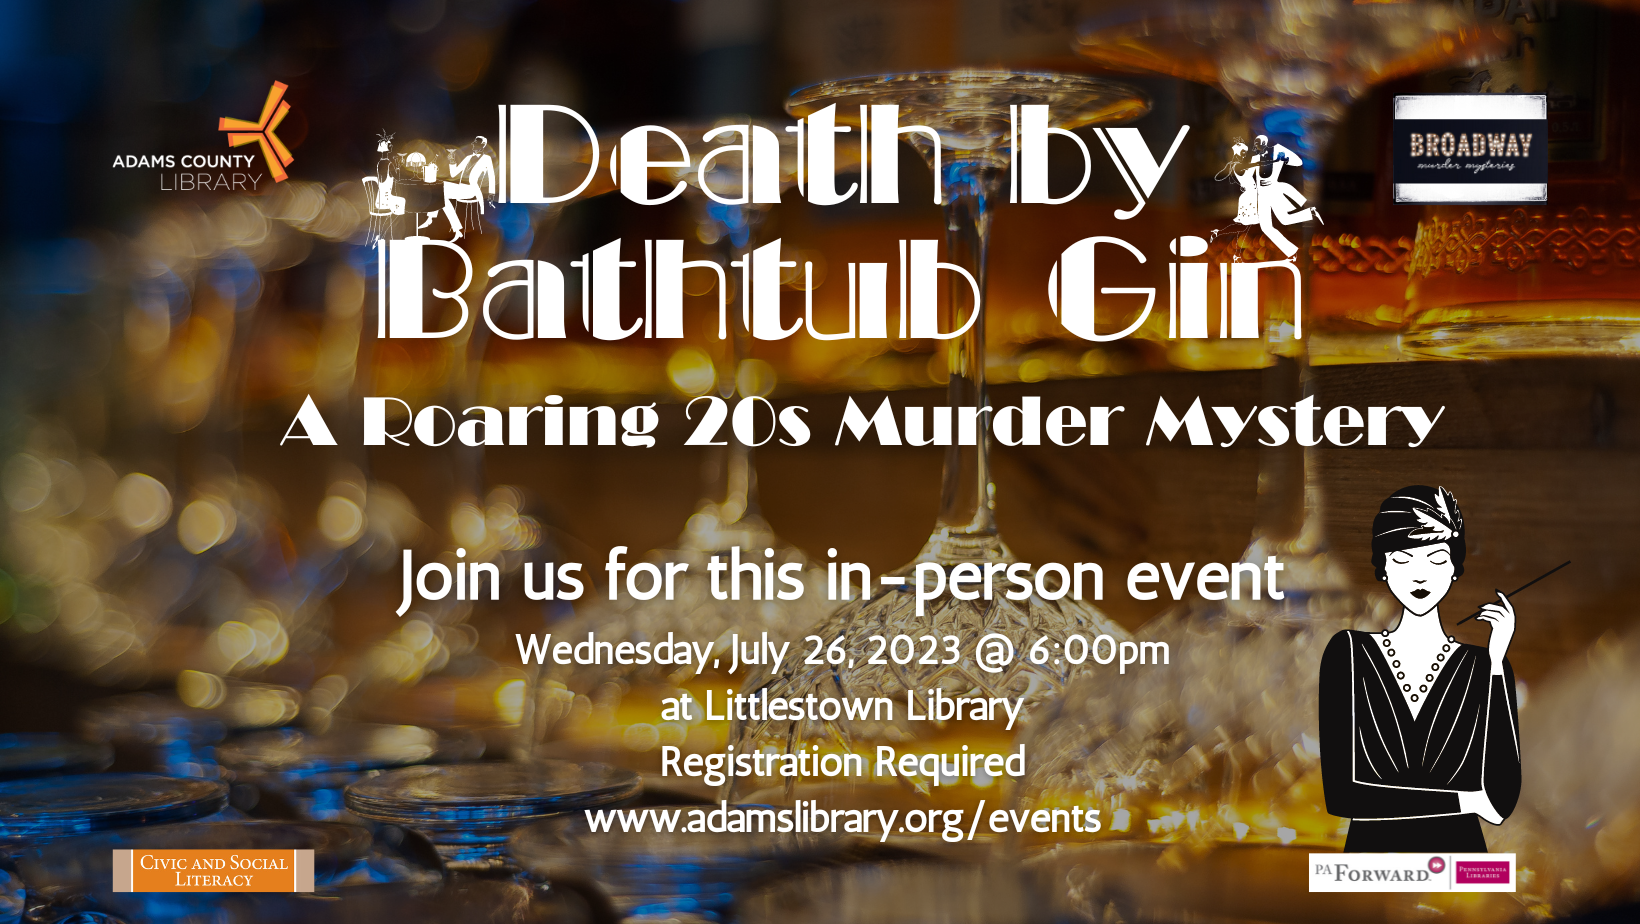 Death by Bathtub Gin Murder Mystery